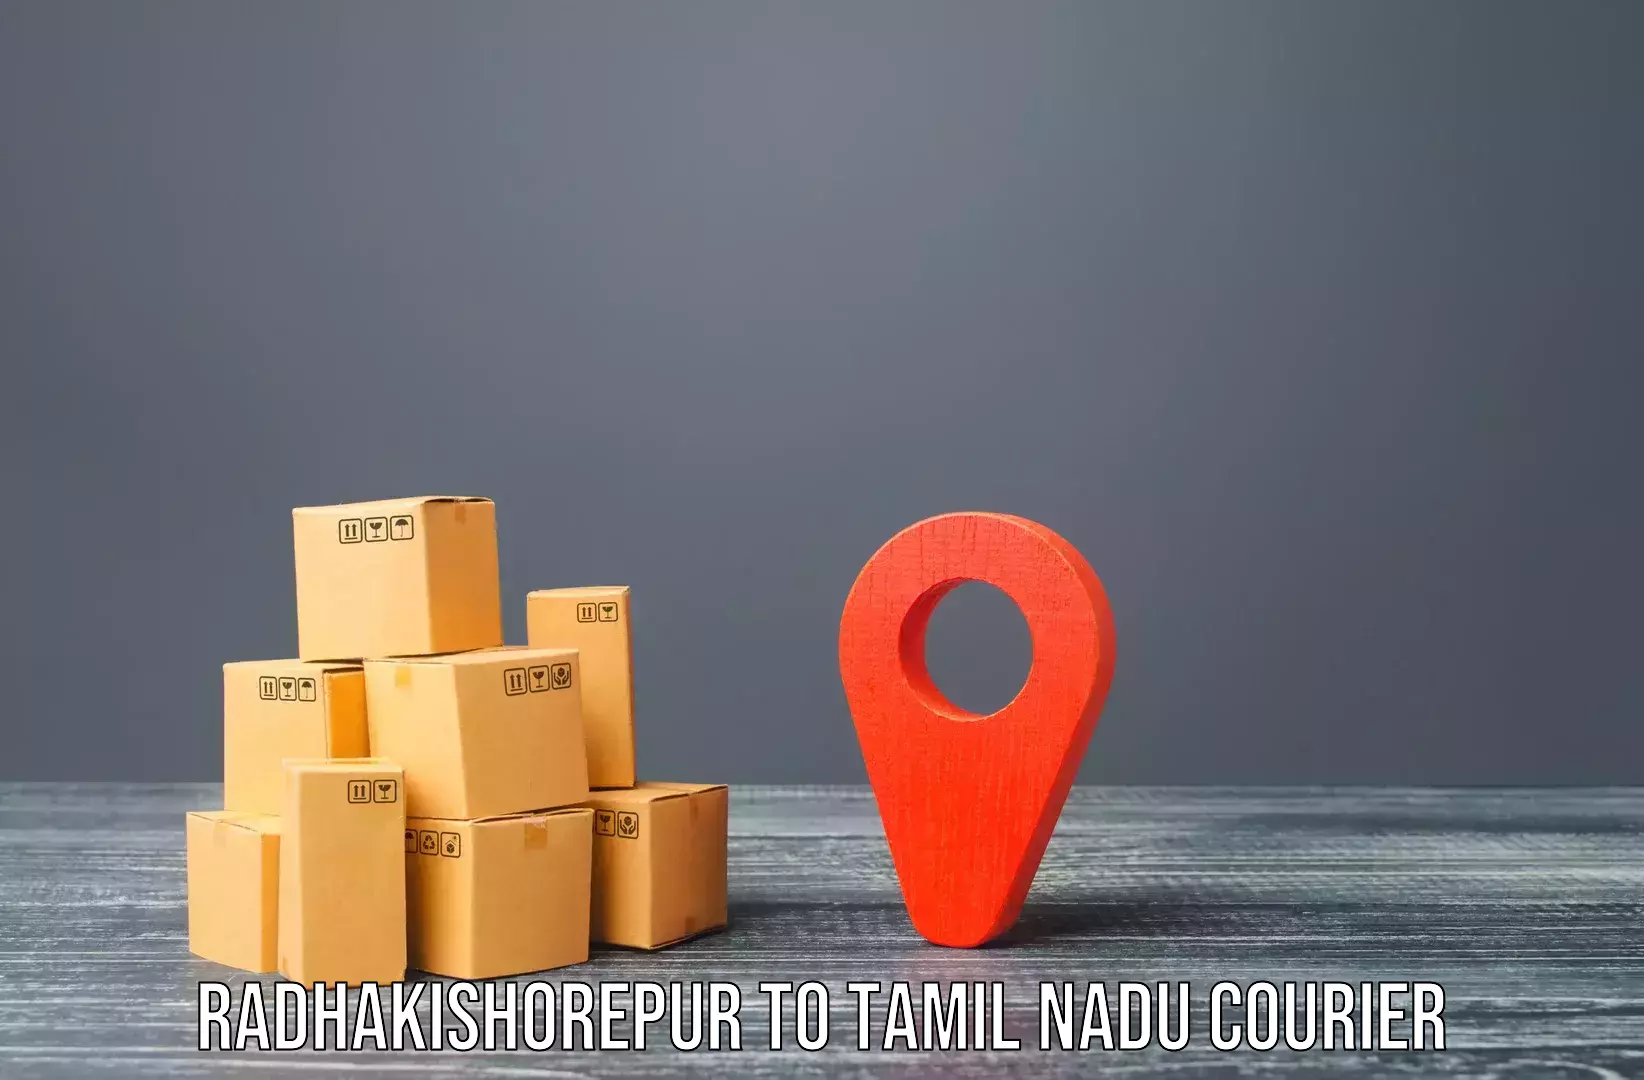 Furniture transport professionals Radhakishorepur to Rajapalayam